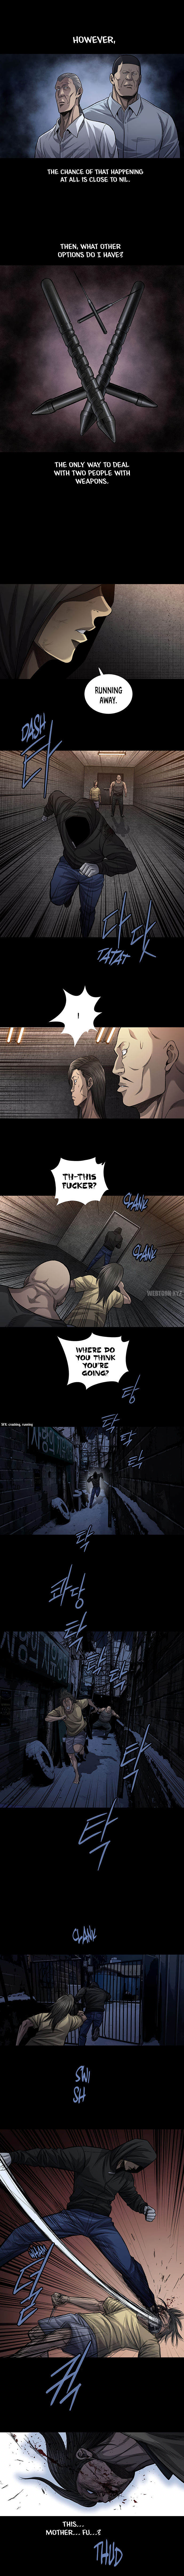 Vigilante - Chapter 101 Page 6